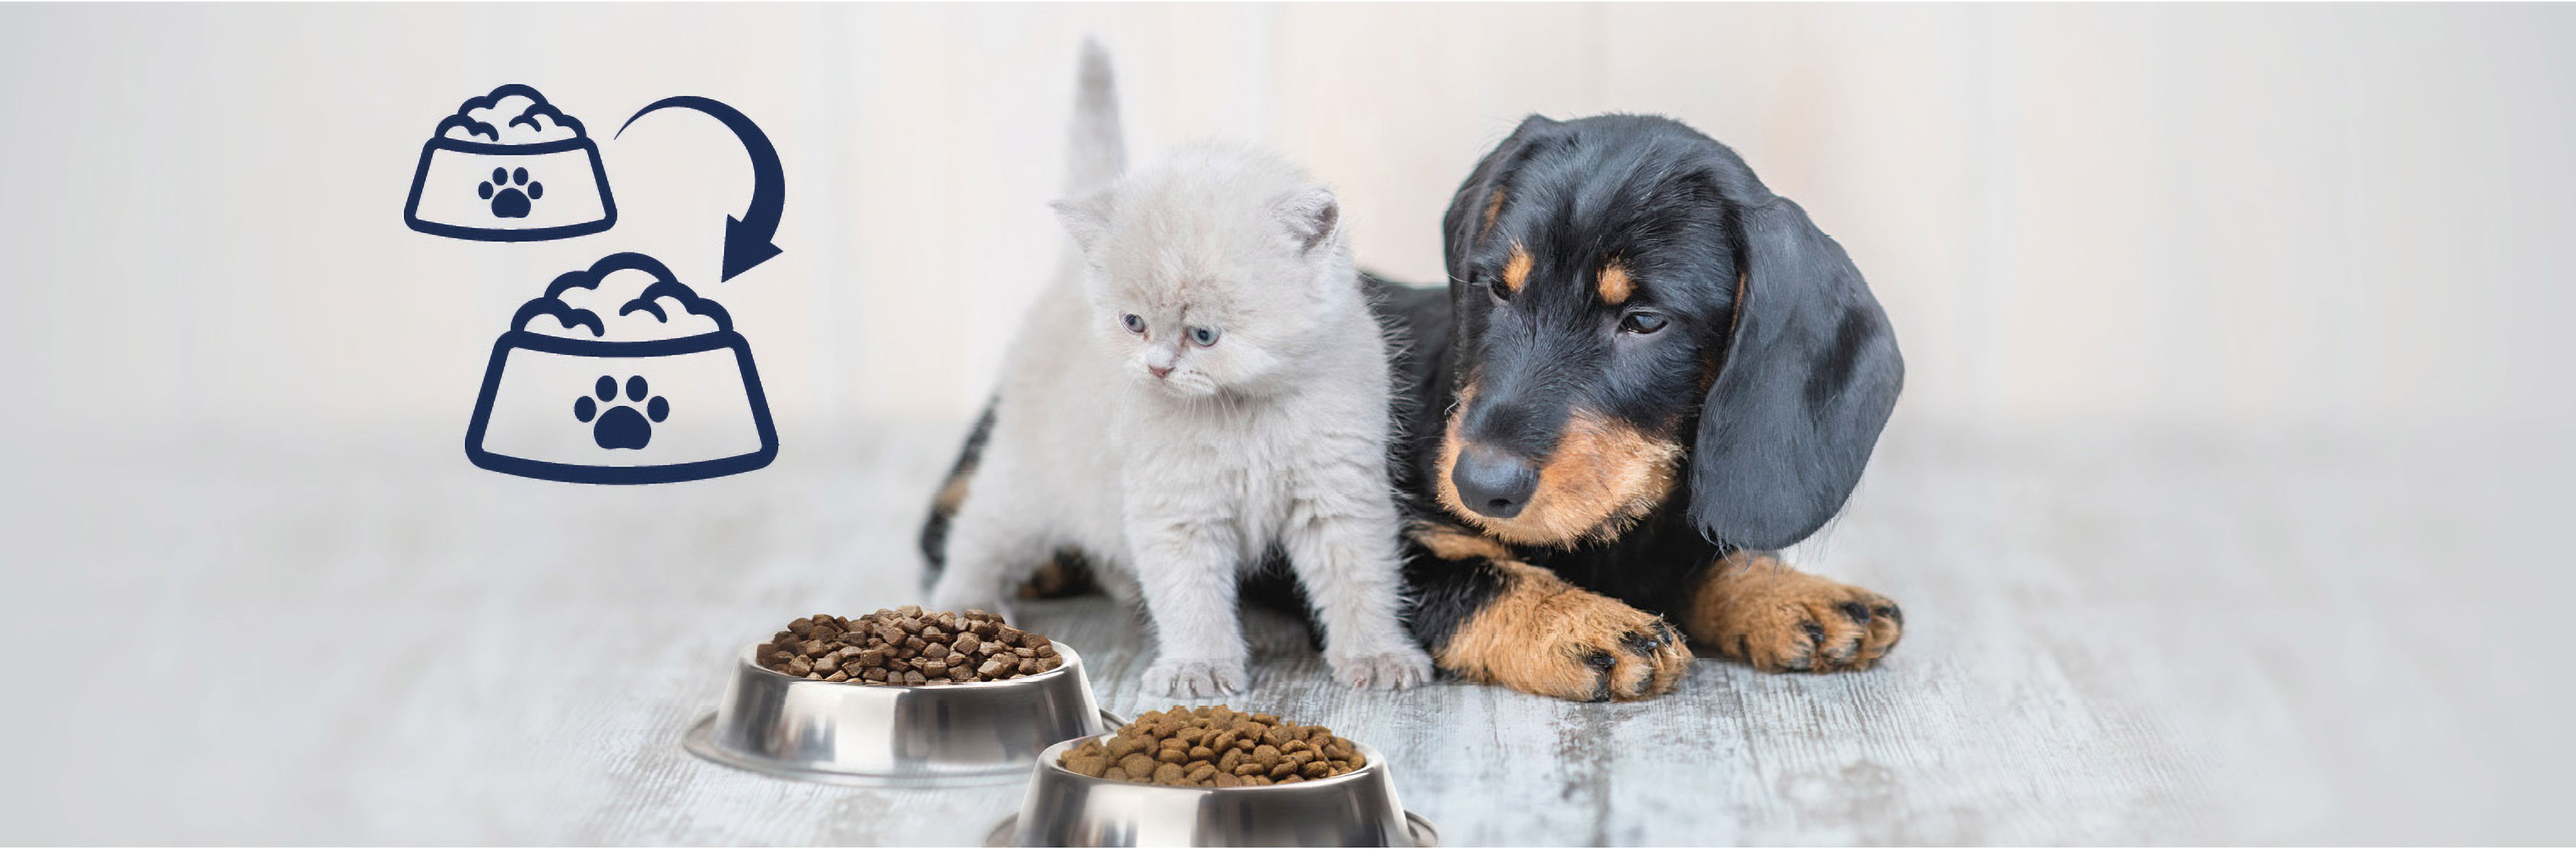 suppe ødemark høj Dr.Clauder's Pet Food and Supplements for Dogs &